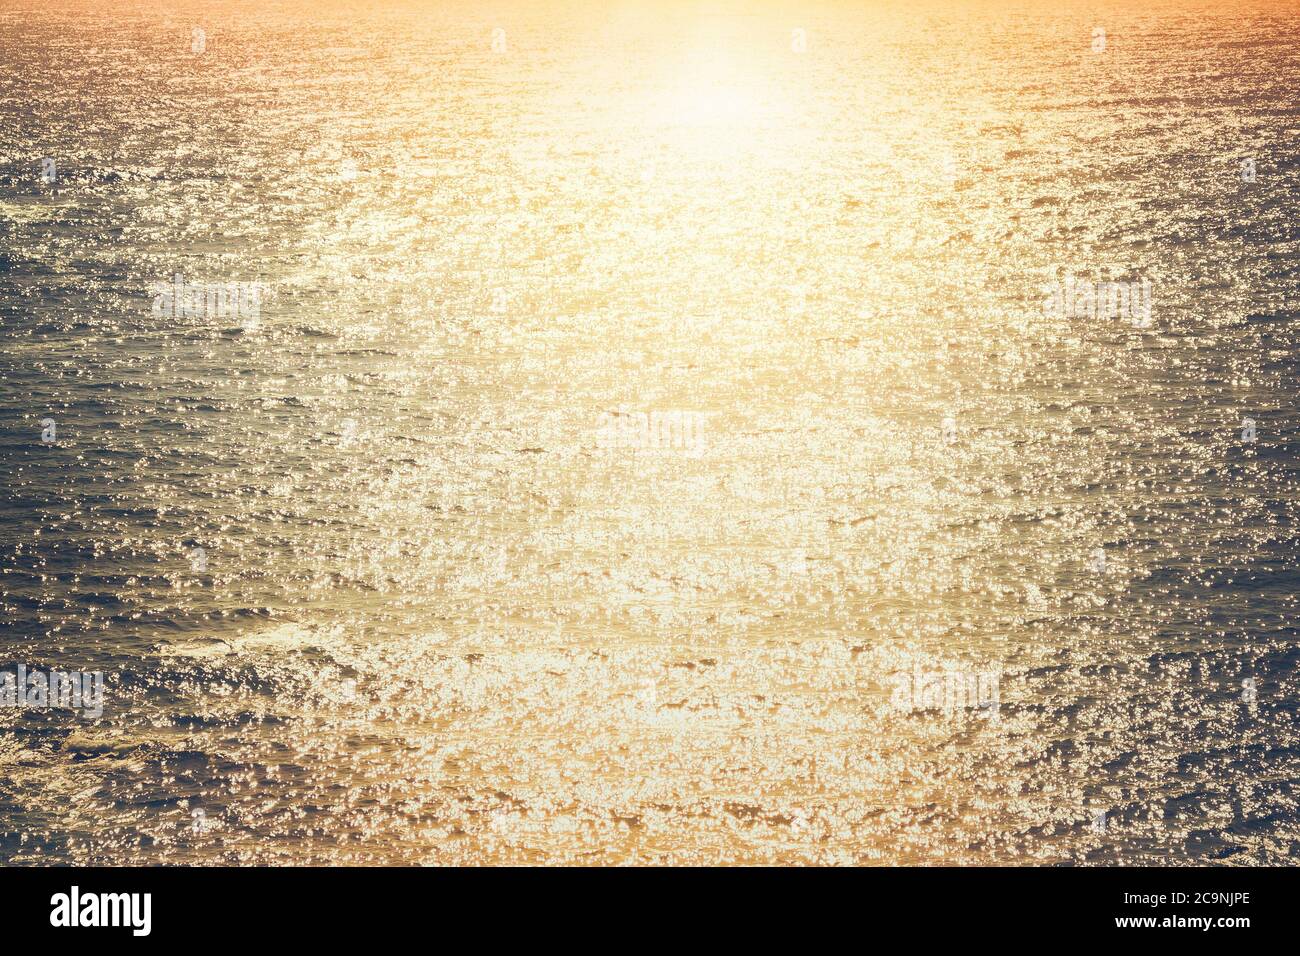 Primo piano dell'oceano pacifico al tramonto con la pista del sole Foto Stock